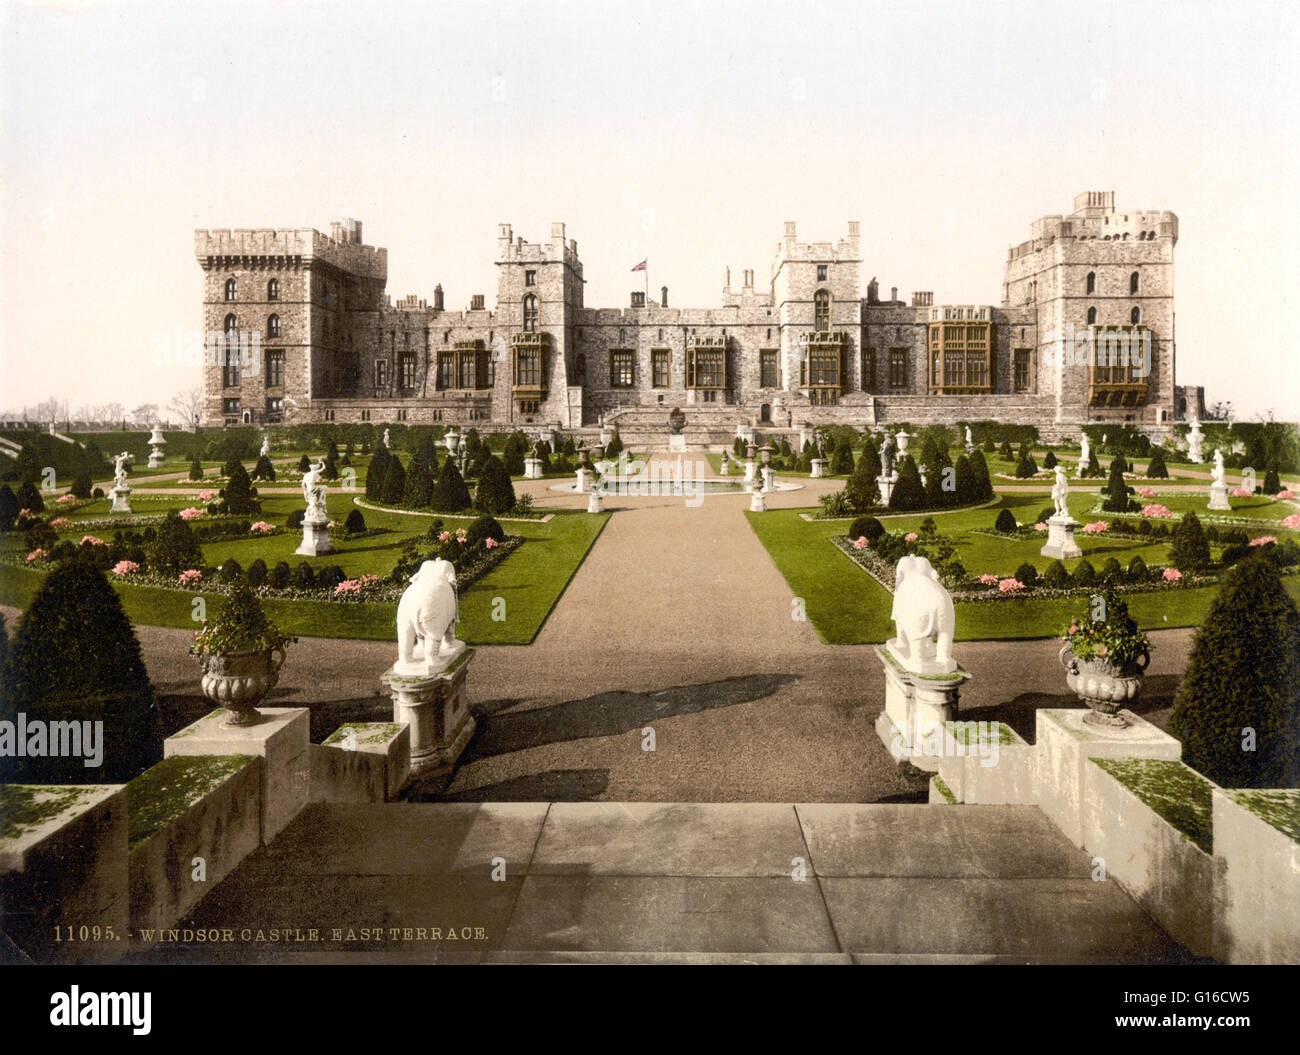 Windsor, Est terrazza, Inghilterra. Il Castello di Windsor è una residenza reale di Windsor nella contea inglese del Berkshire. Il castello è notevole per la sua lunga associazione con la famiglia reale britannica e per la sua architettura. Il castello originale è stato costruito nella Foto Stock